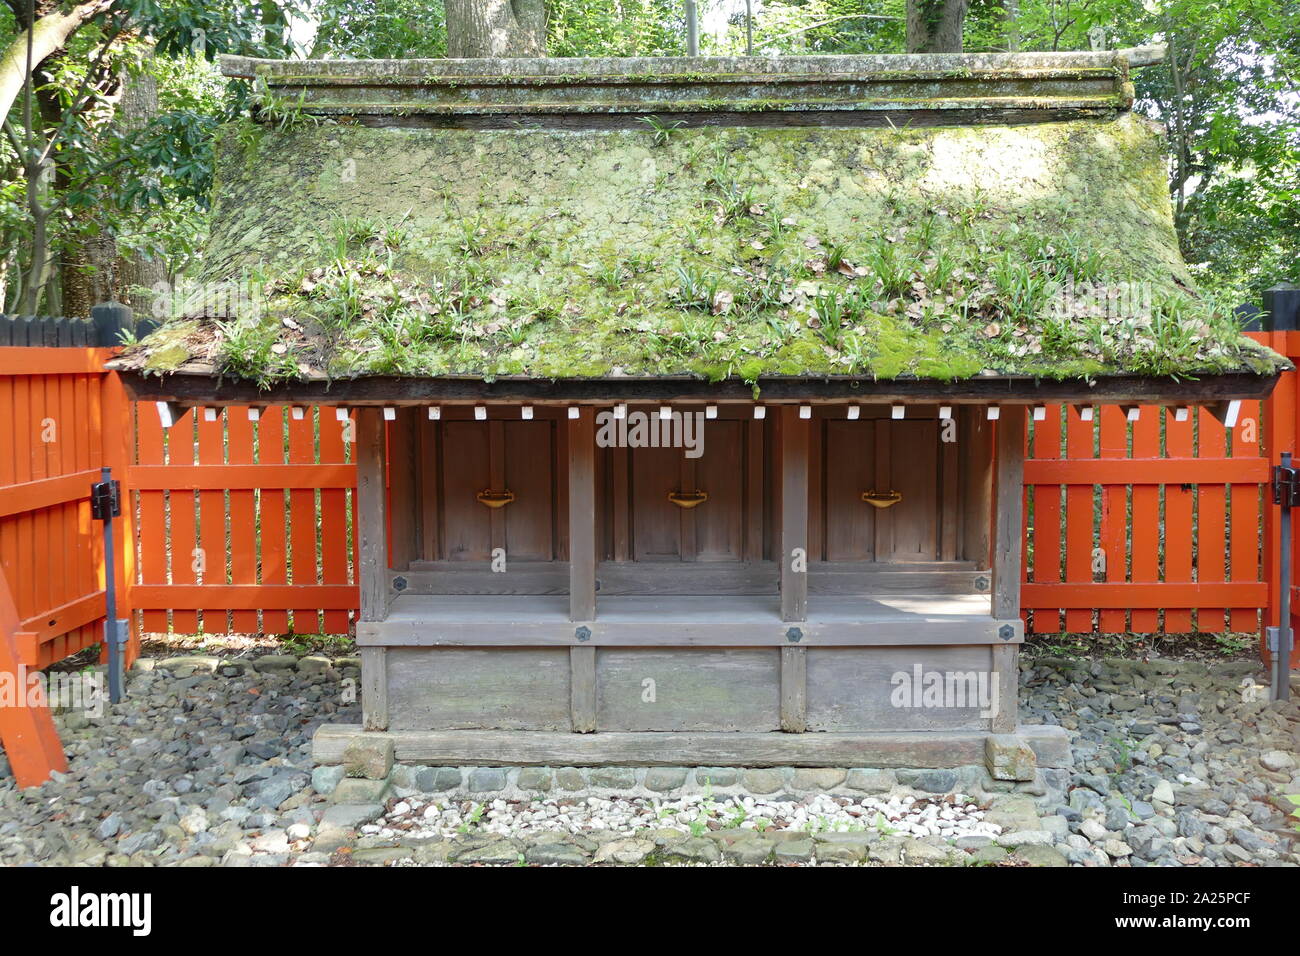 Santuario Shimogamo (Shimogamo-jinja), santuario scintoista nel Shimogamo distretto della città di Kyoto's Sakyo Ward. Il suo nome formale è Kamo-mioya-jinja, è uno dei più antichi santuari Shintoisti in Giappone ed è uno dei diciassette monumenti storici di antiche di Kyoto che sono stati designati dall'UNESCO come Sito del Patrimonio Mondiale. Il nome di jinja identifica il Kamo famiglia di kami o divinità che vengono venerati. Il nome si riferisce anche all'ambito del santuario del legno nelle vicinanze Foto Stock